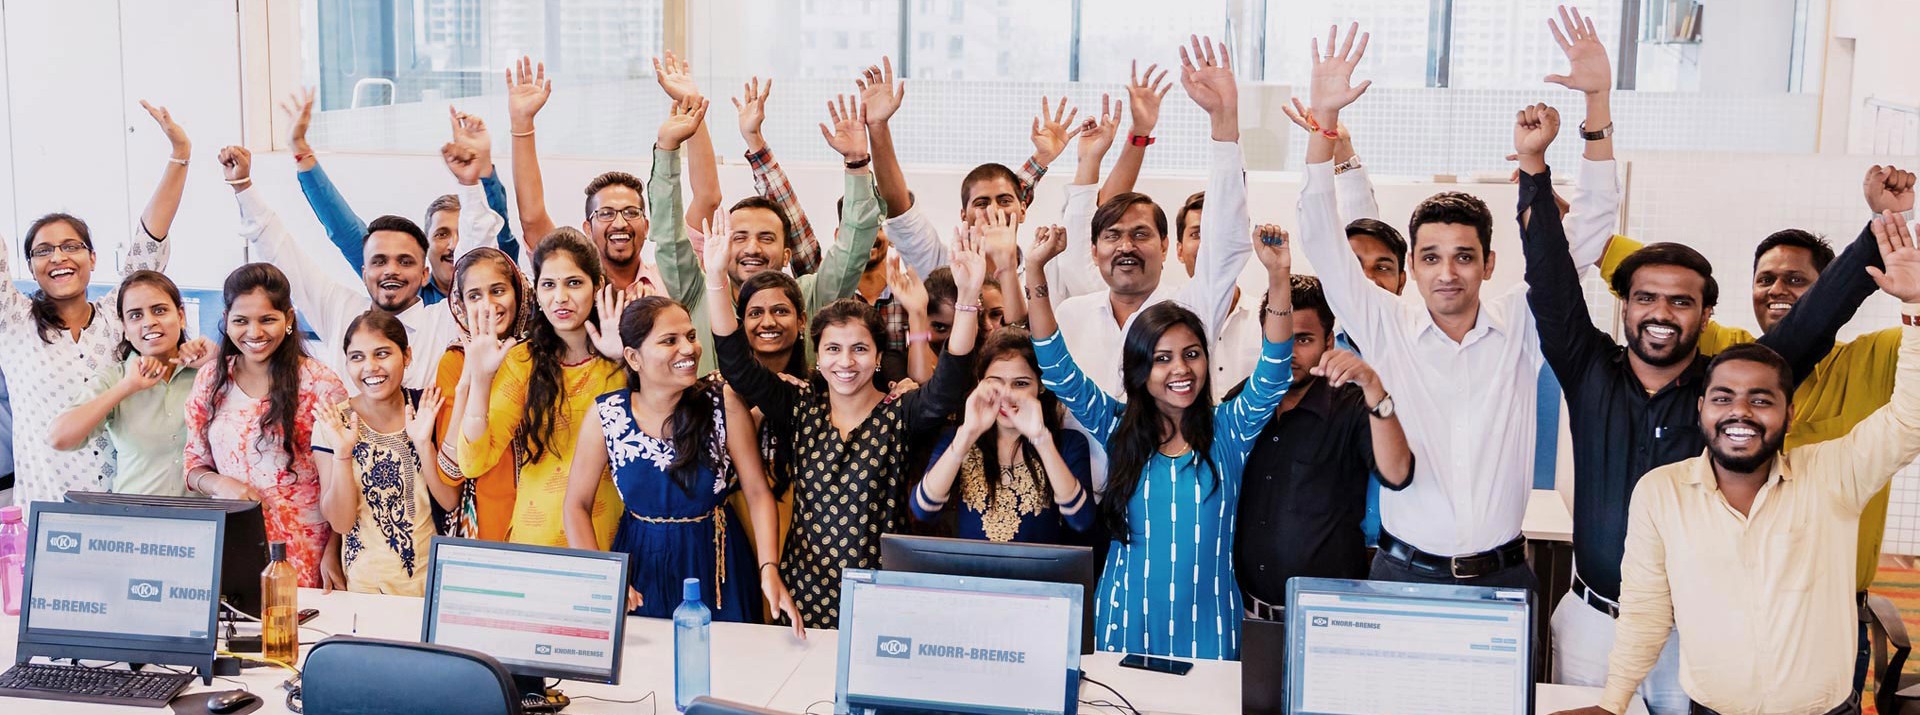 Jubelnde Mitarbeiterinnen und Mitarbeiter des Technology Center India in ihrem Büro.